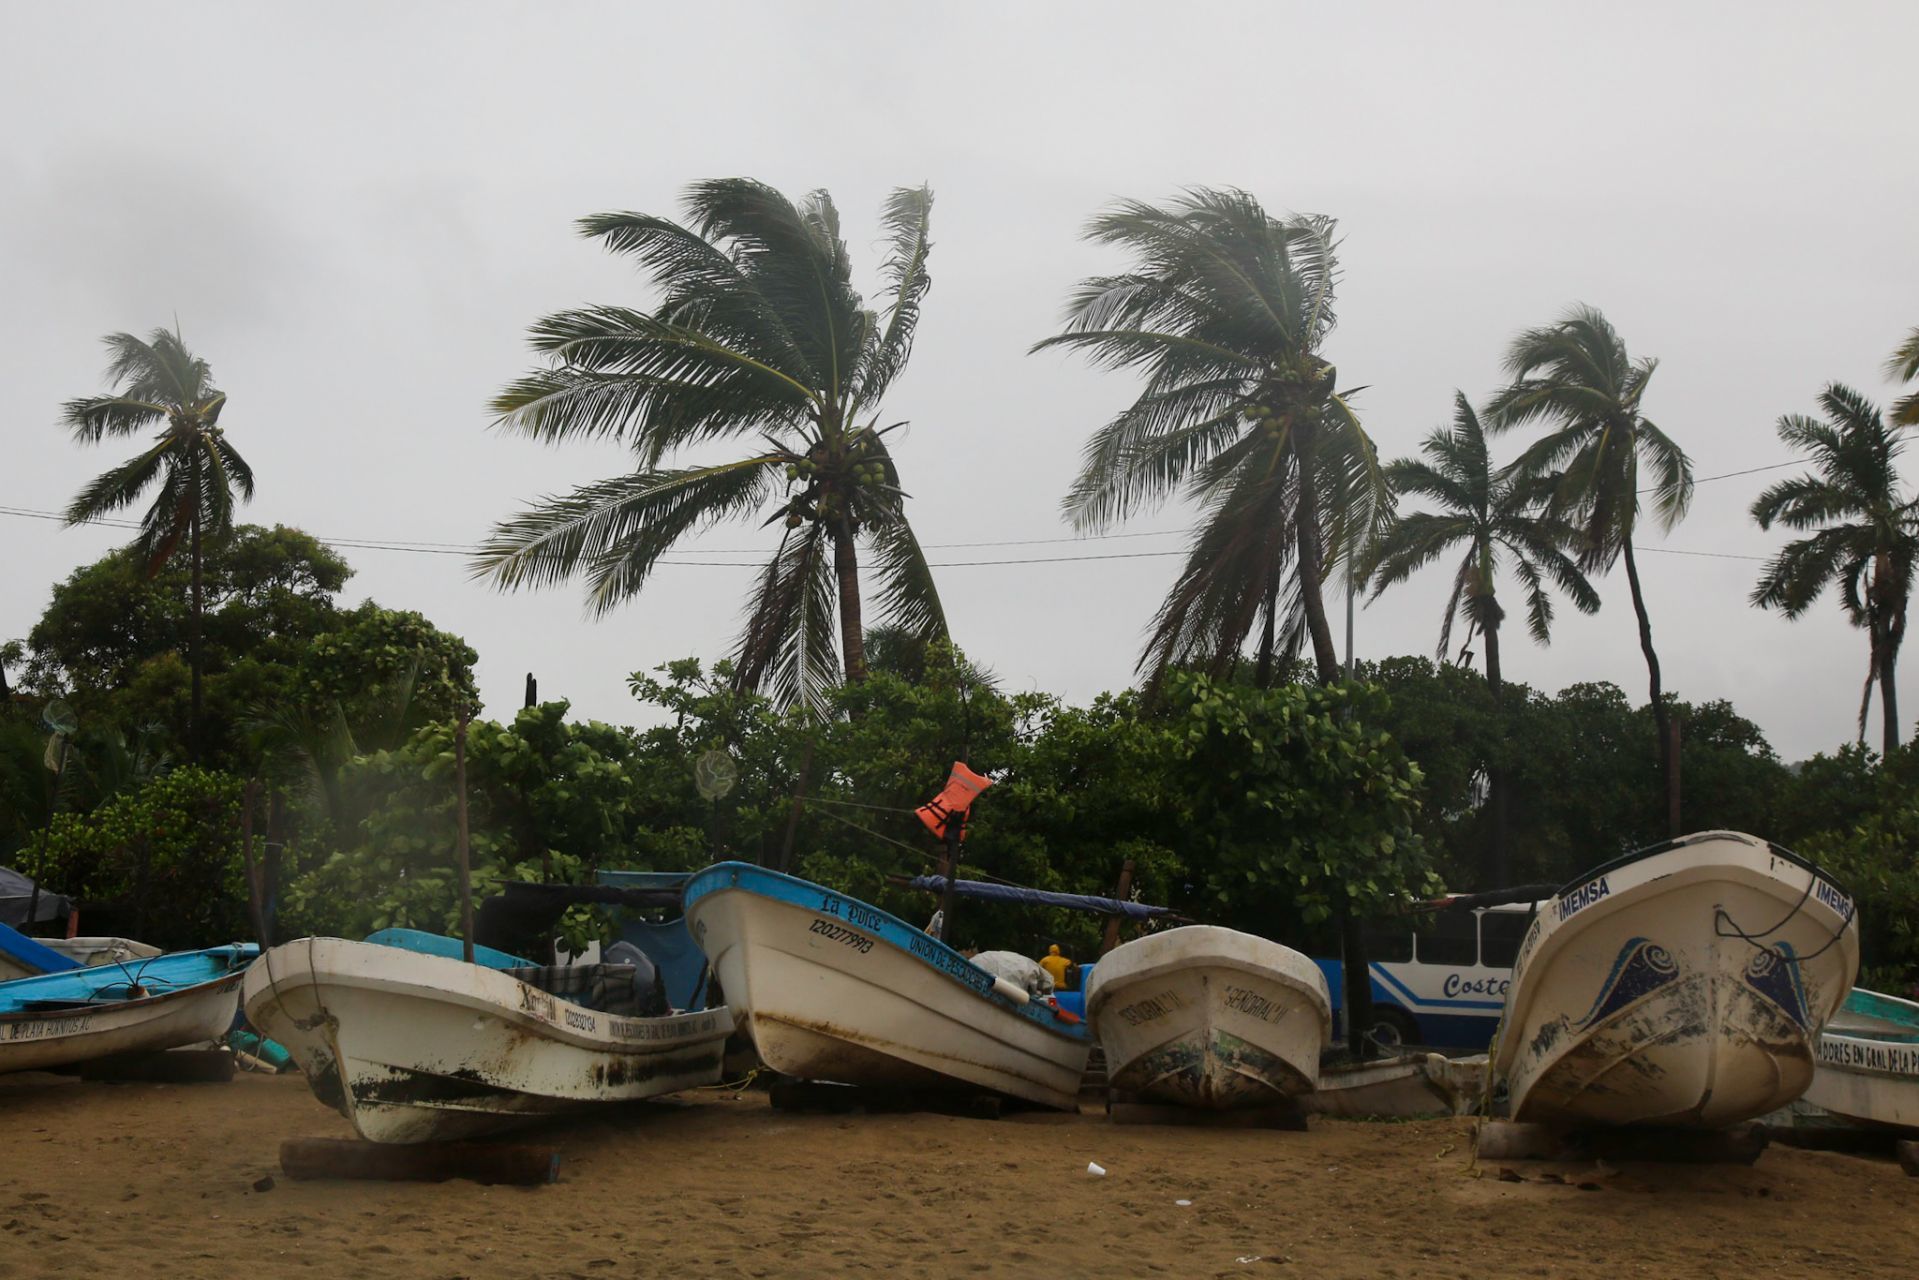 Autoridades de protección civil alertaron sobre la intensificación de la tormenta tropical Agatha (Foto: CARLOS ALBERTO CARBAJAL/CUARTOSCURO)